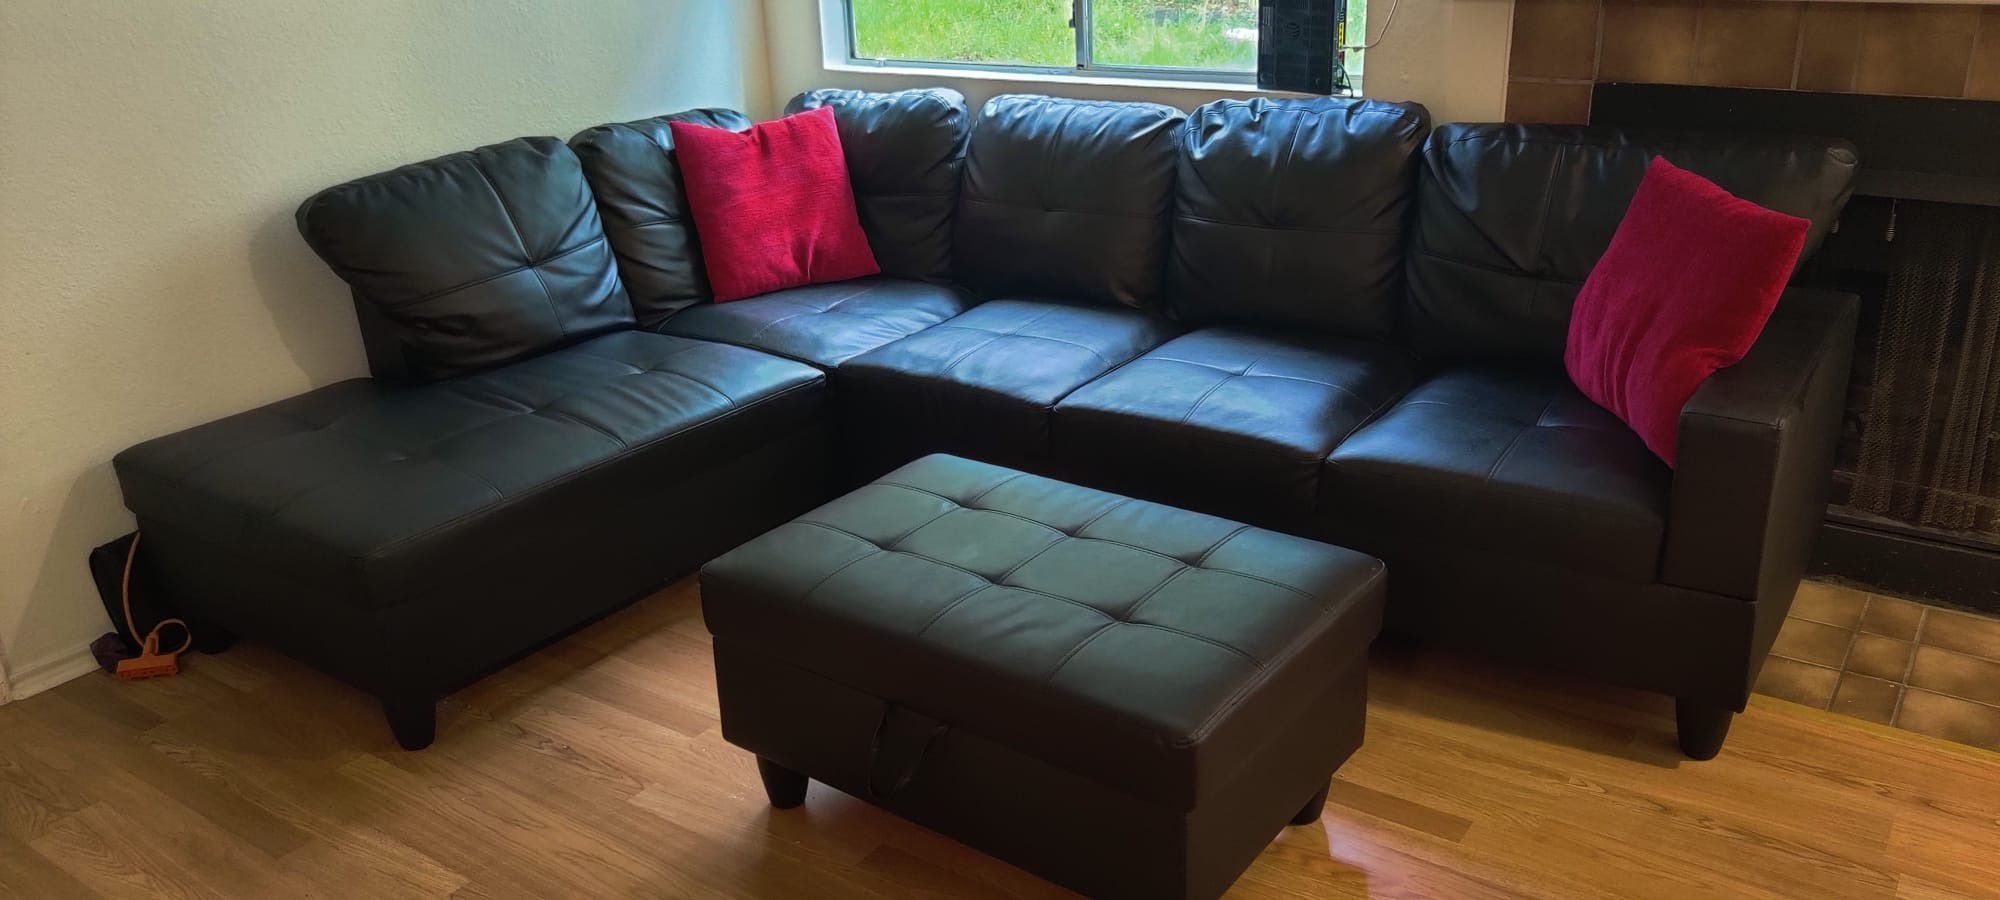 Sofa With Ottoman (Orig 900$)